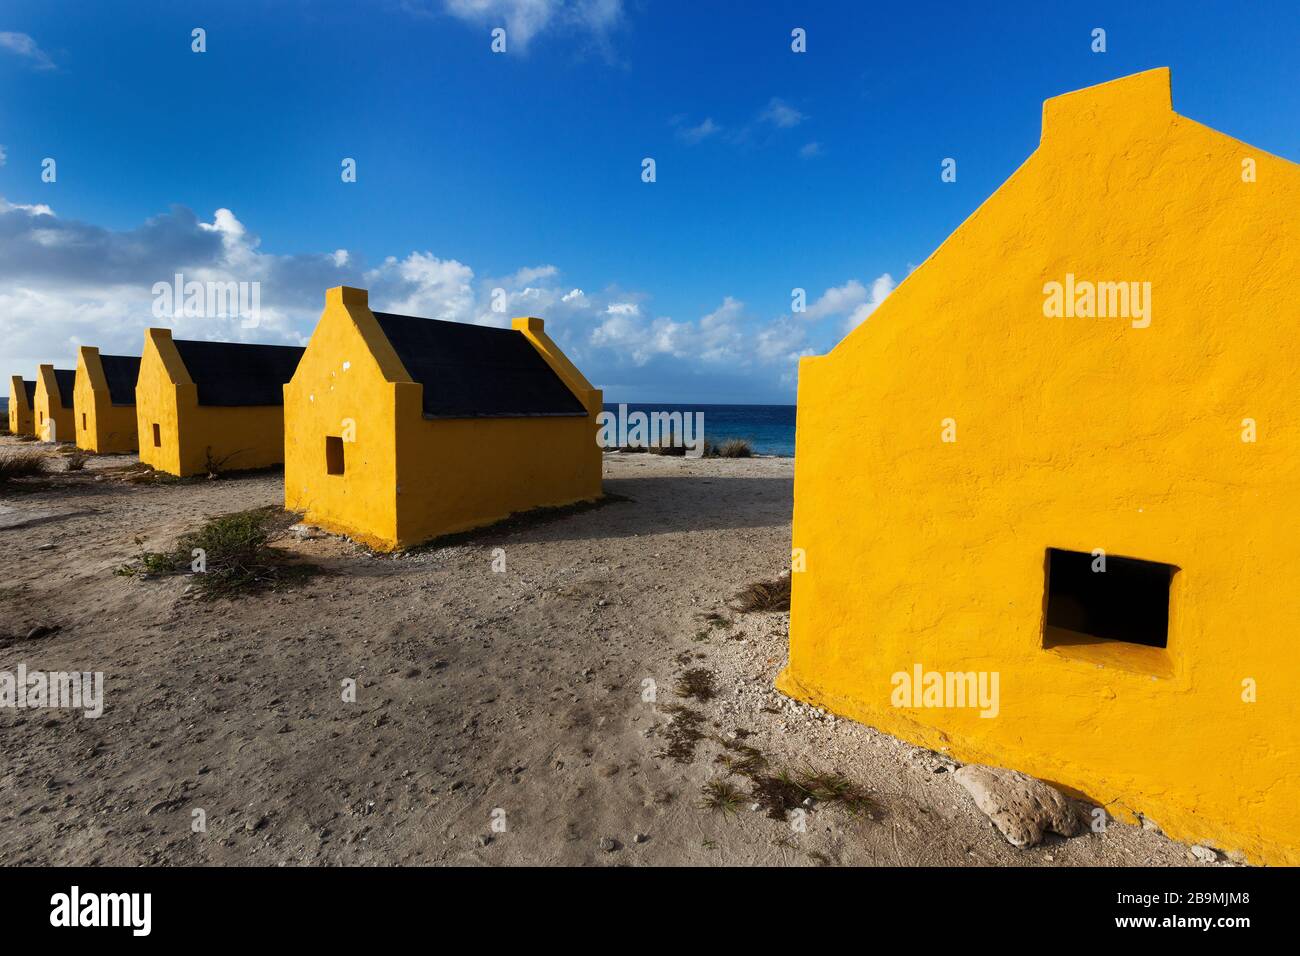 Huttes historiques d'esclaves orange sur la côte de Bonaire, des îles ABC Antilles hollandais, mer de Carbbean Banque D'Images